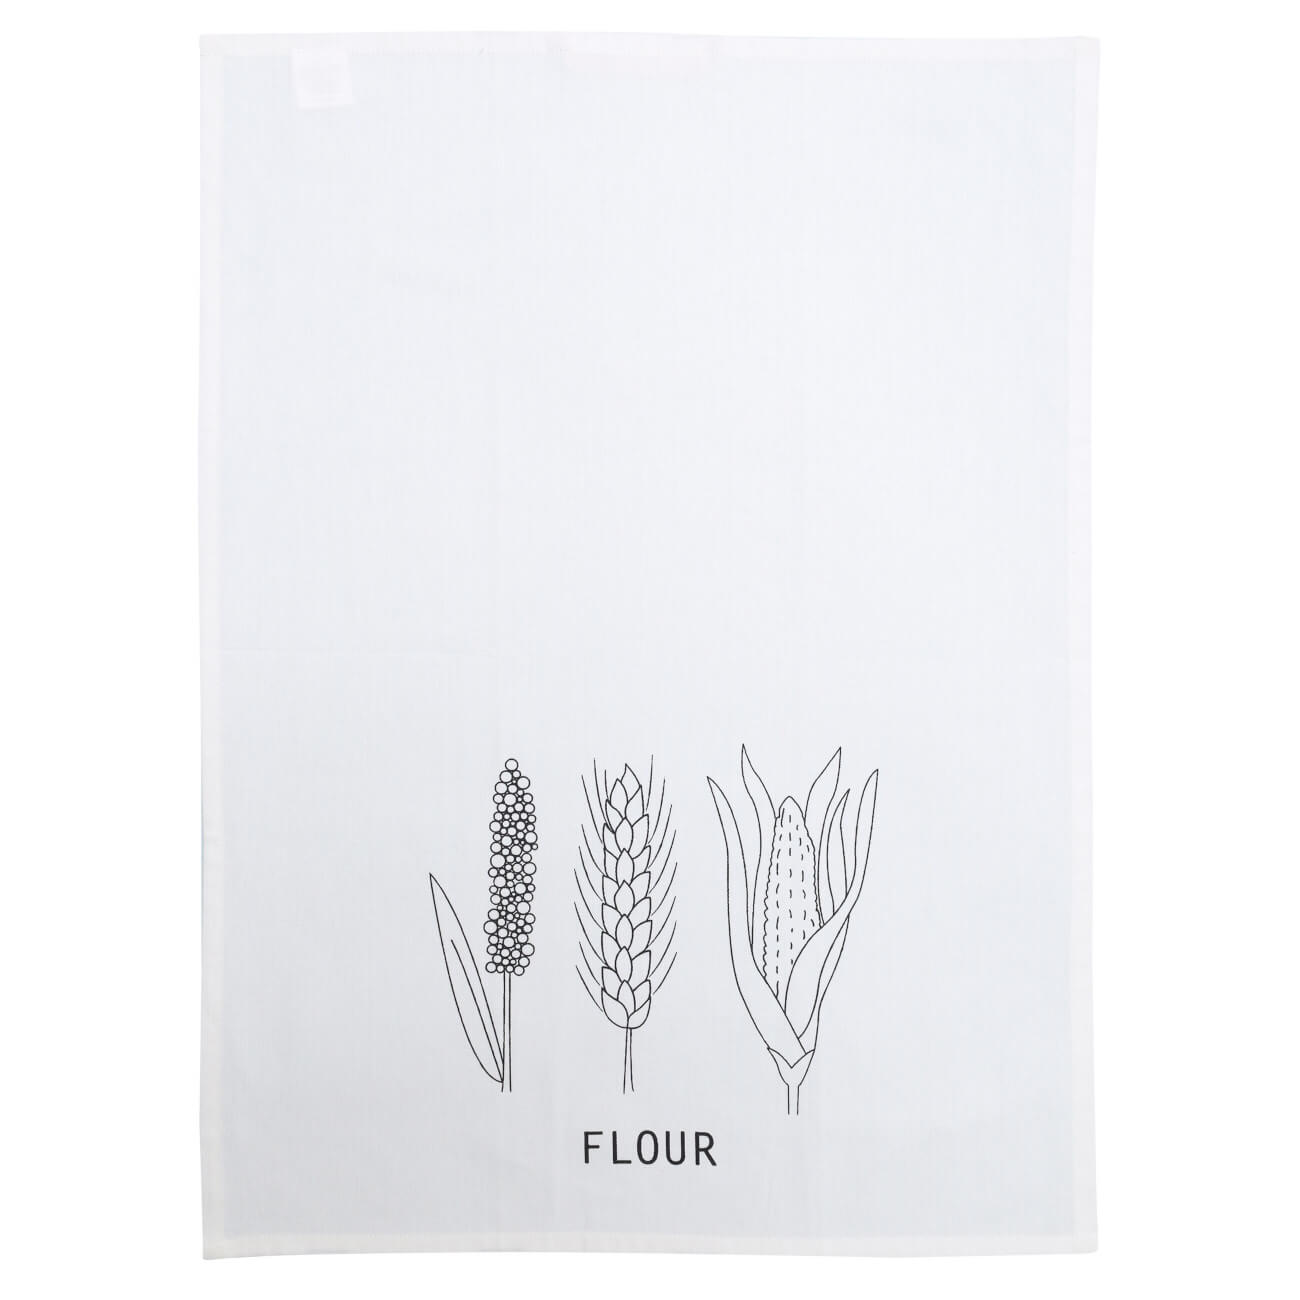 Полотенце кухонное, 51х71 см, хлопок, белое, Злаки, Harvest print изображение № 1